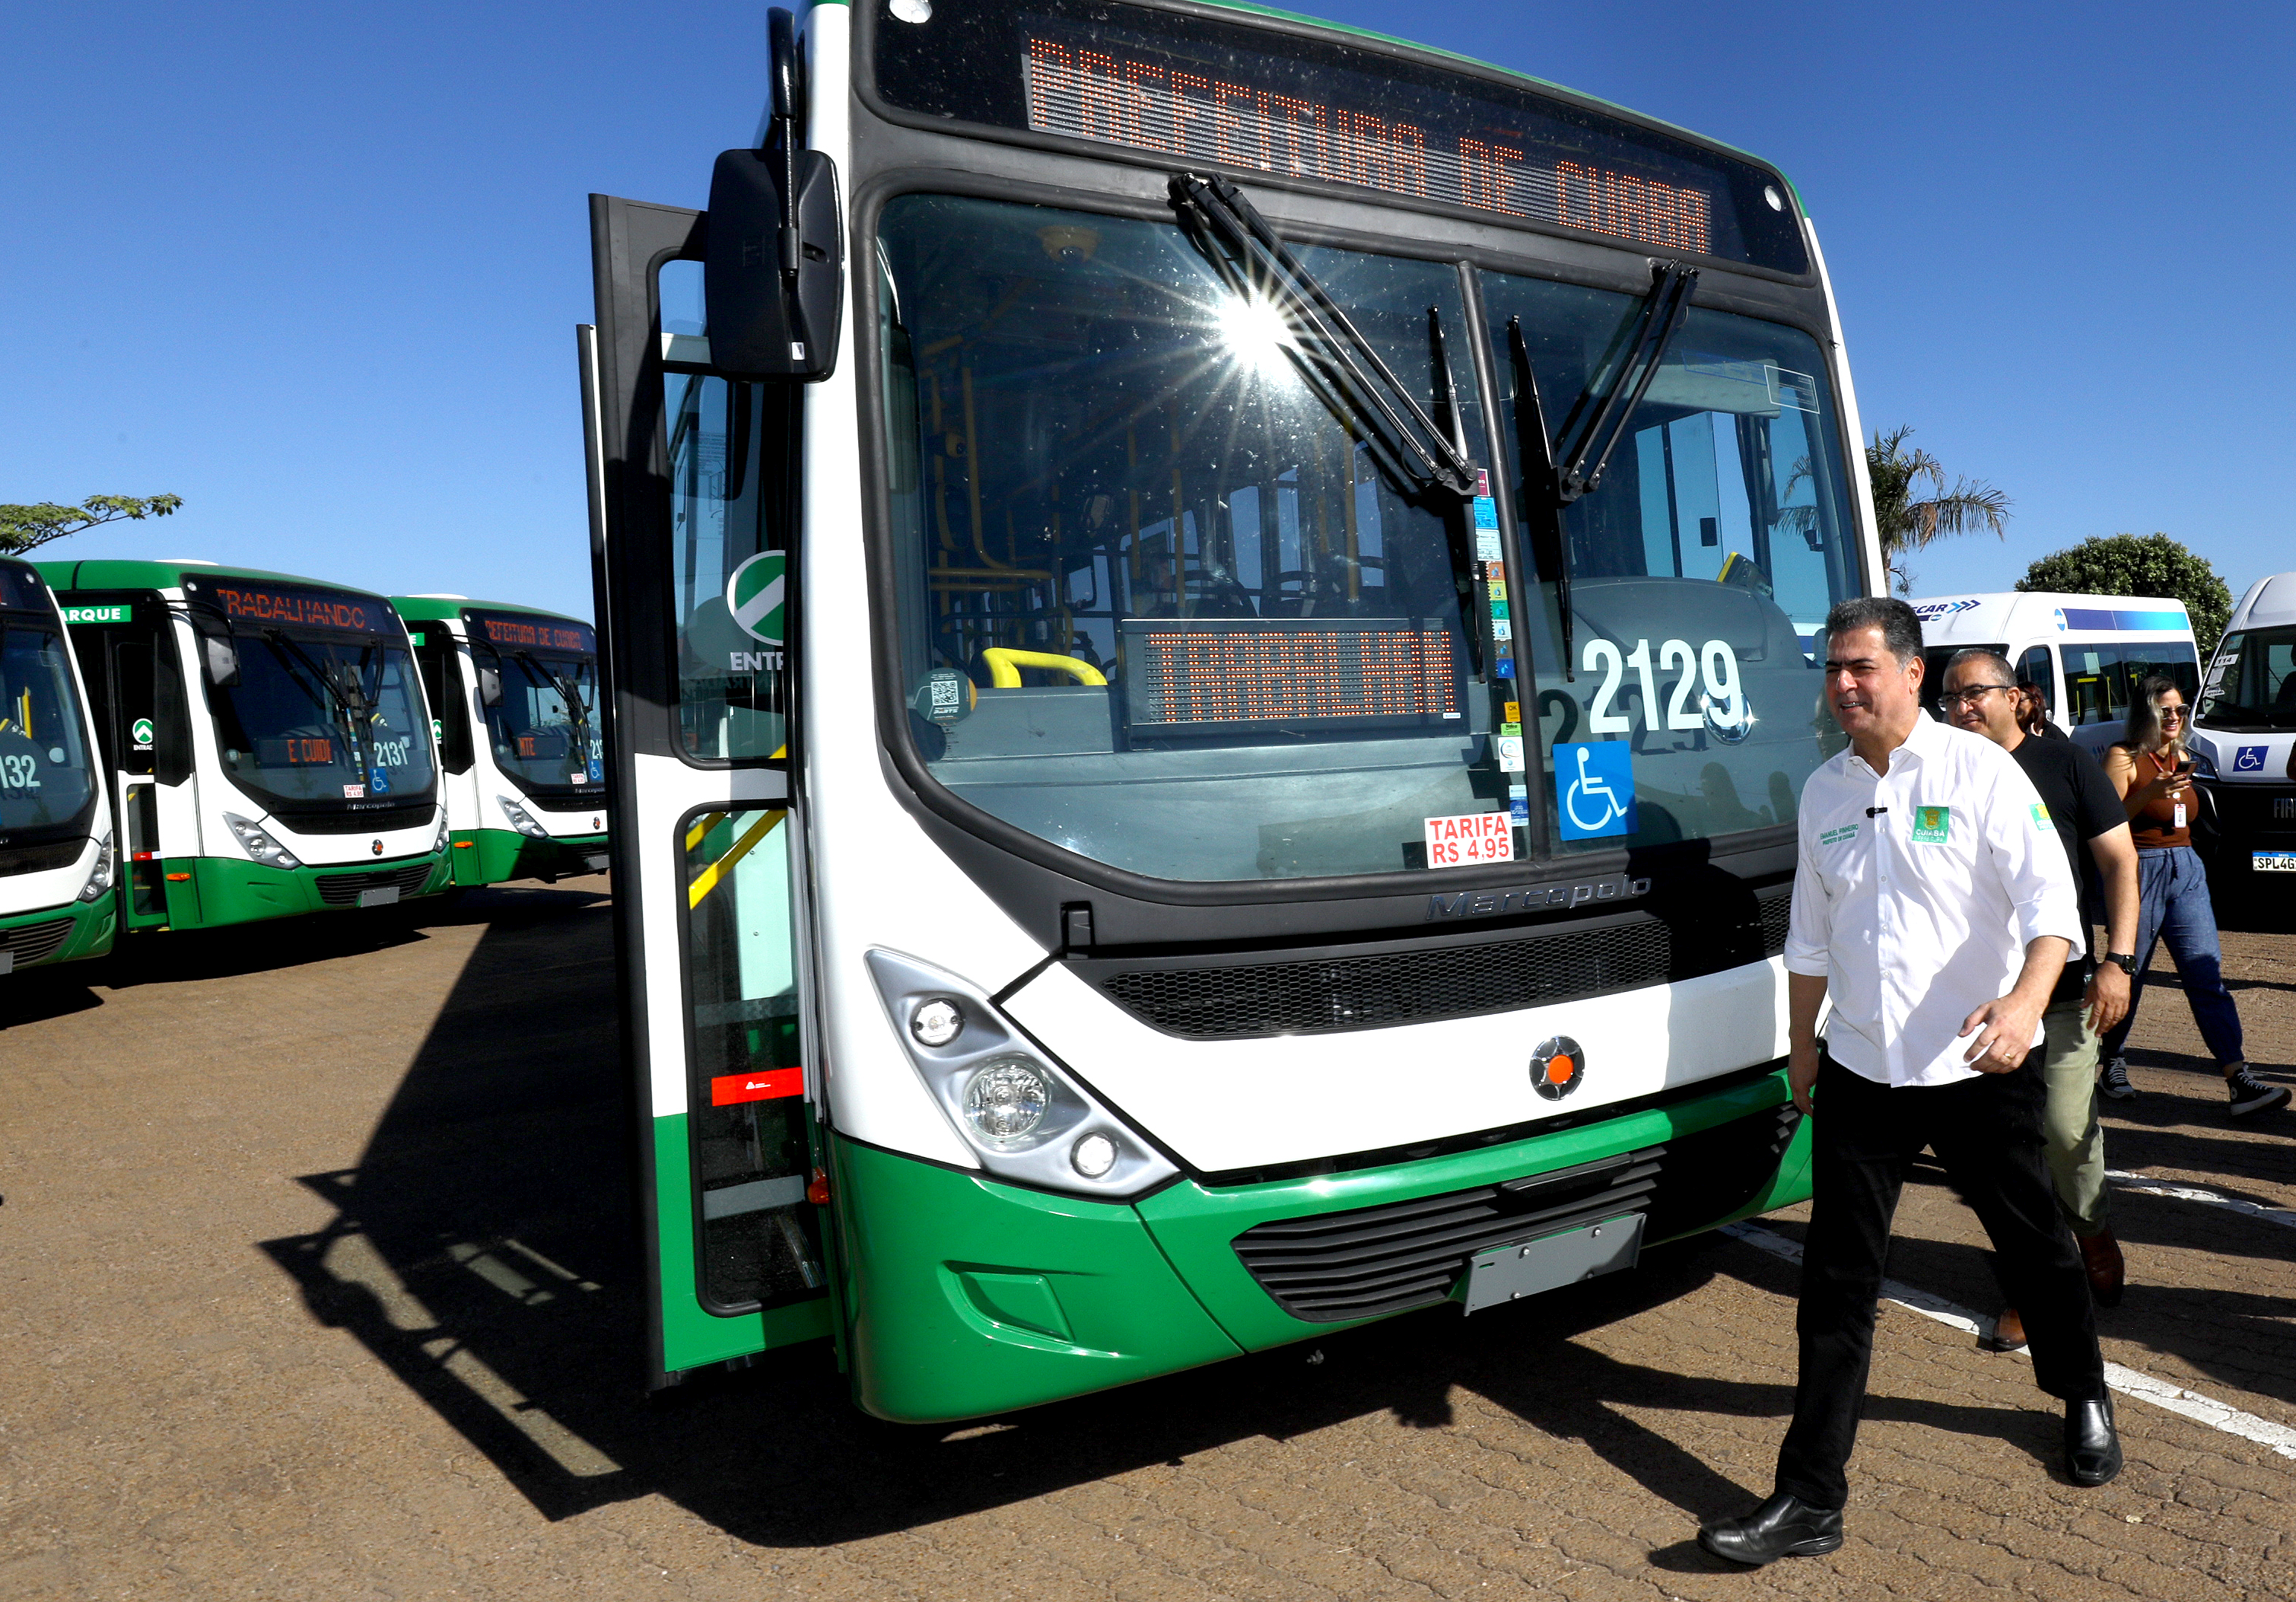 Momento histórico, diz prefeito sobre ampliação da frota de ônibus